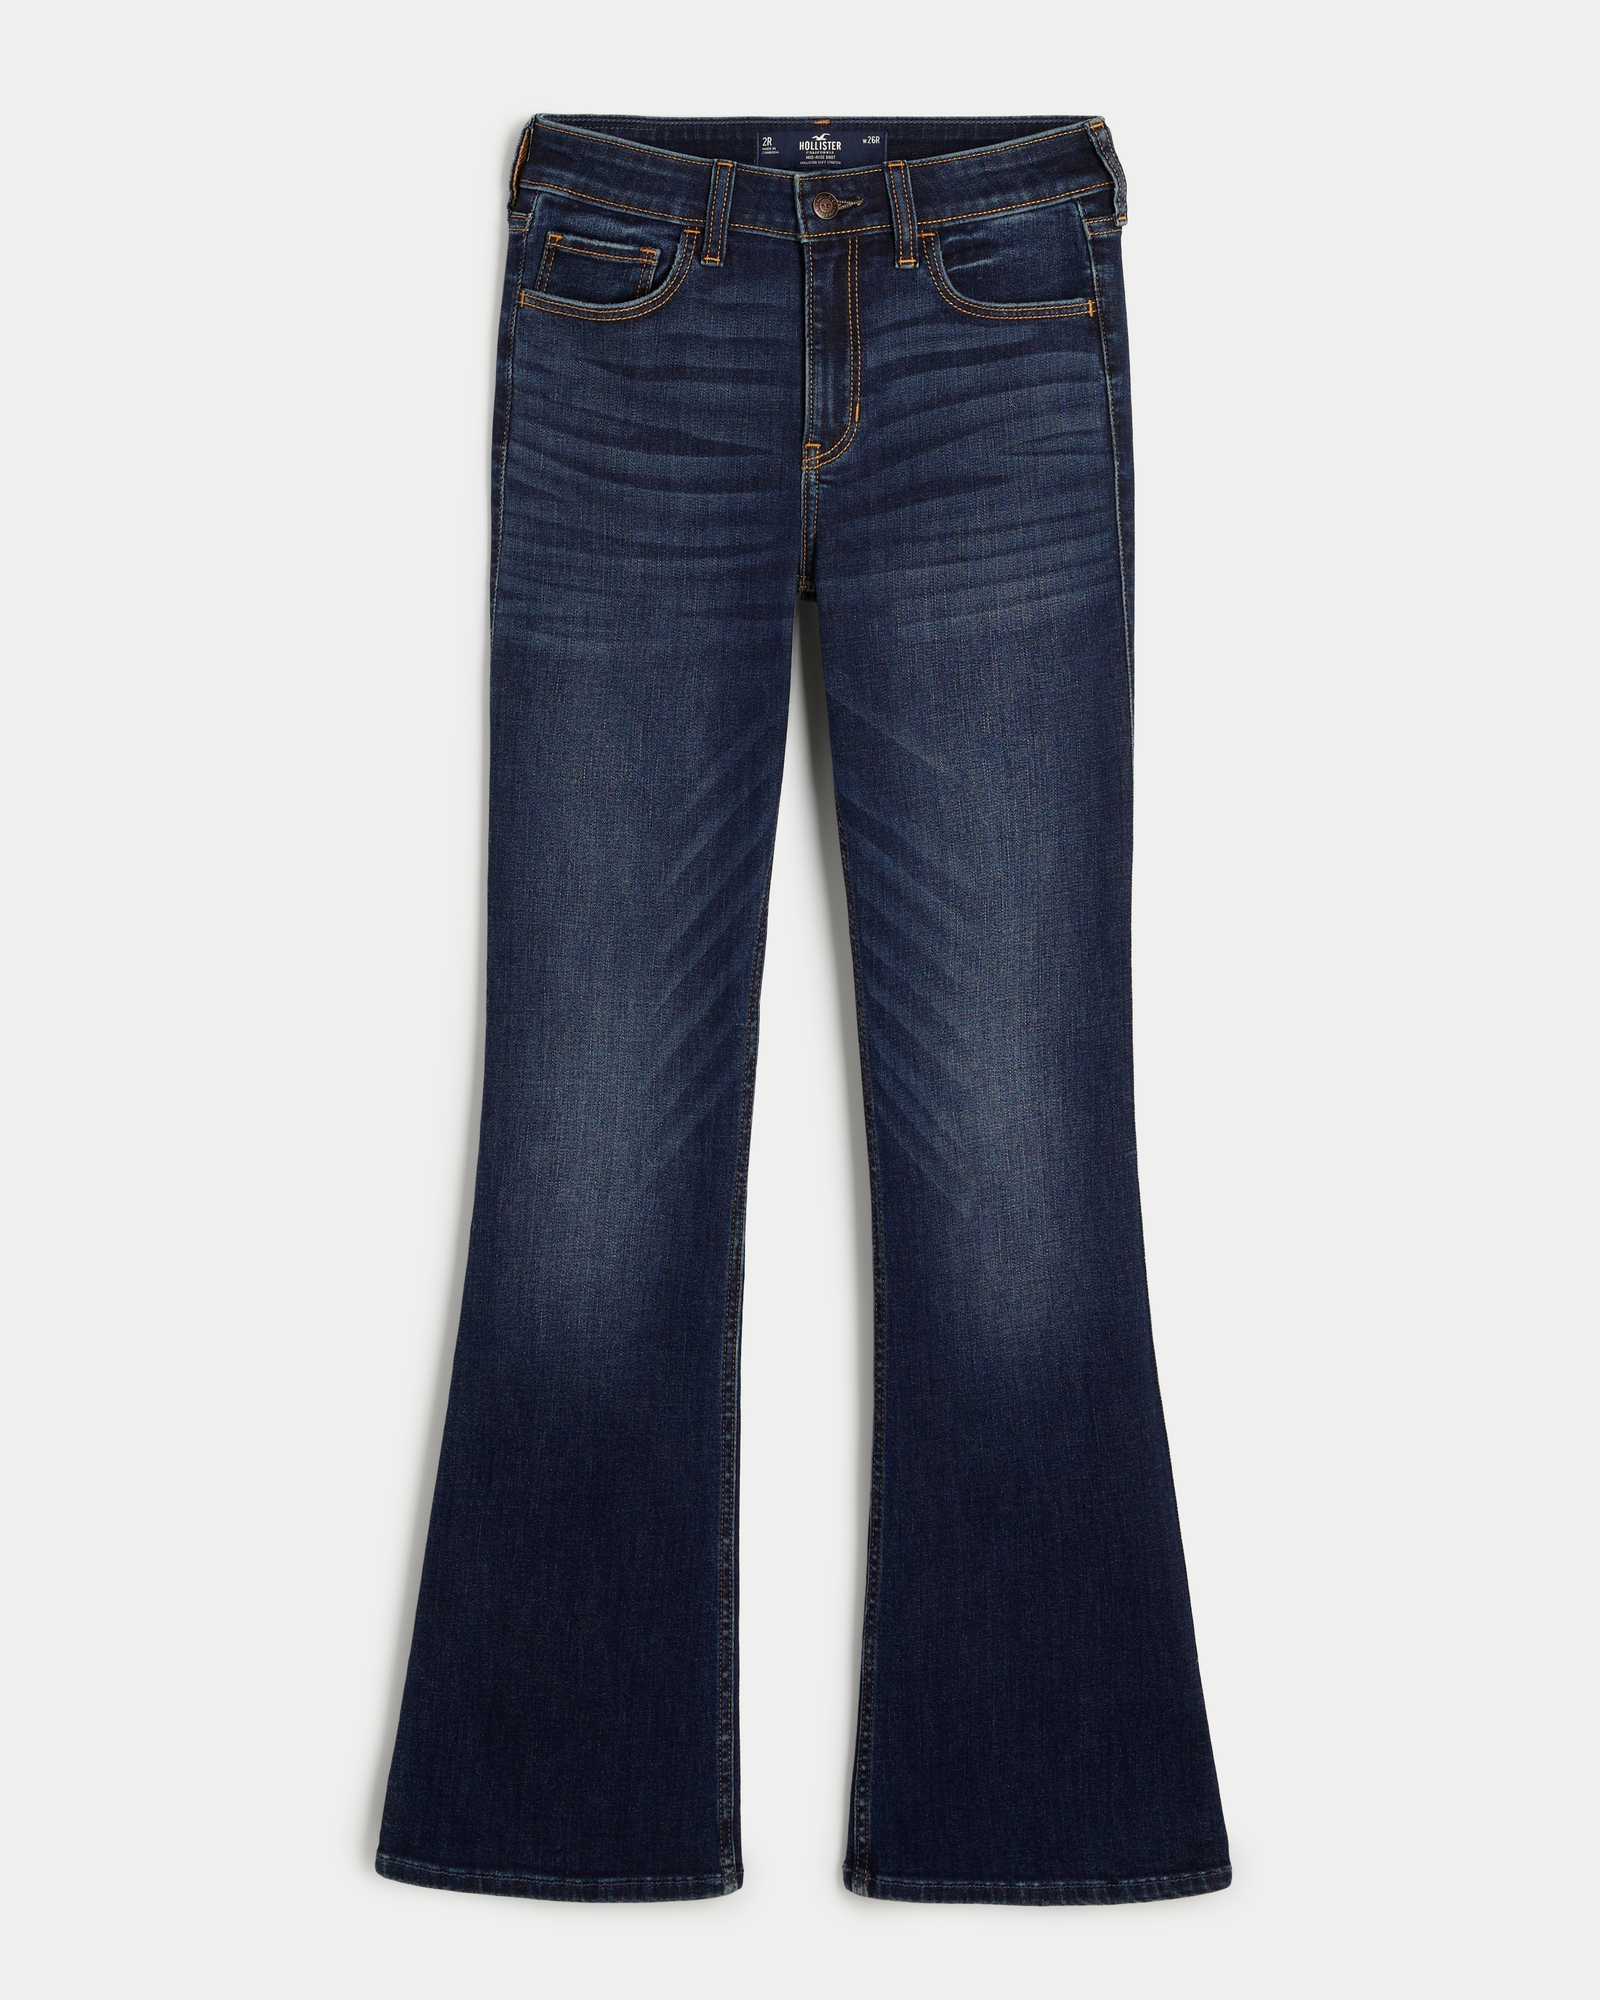 Hollister straight leg dark wash jeans​